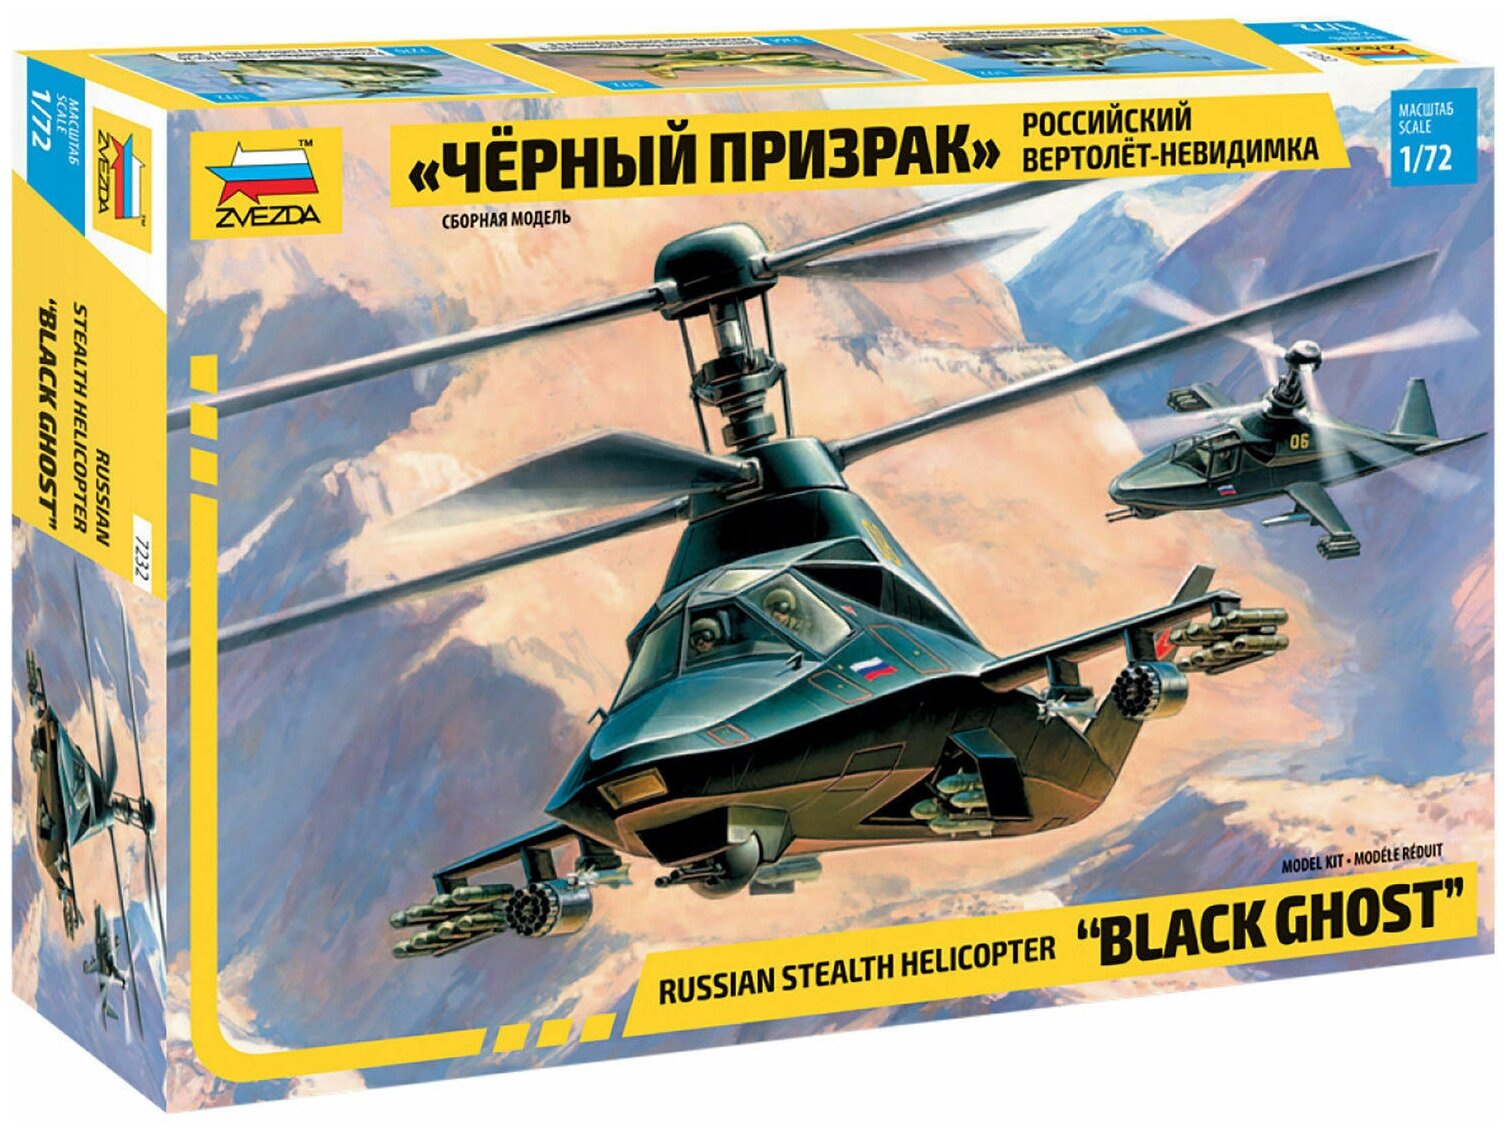 Сборная модель Zvezda 7232 Российский вертолет-невидимка "Черный призрак"